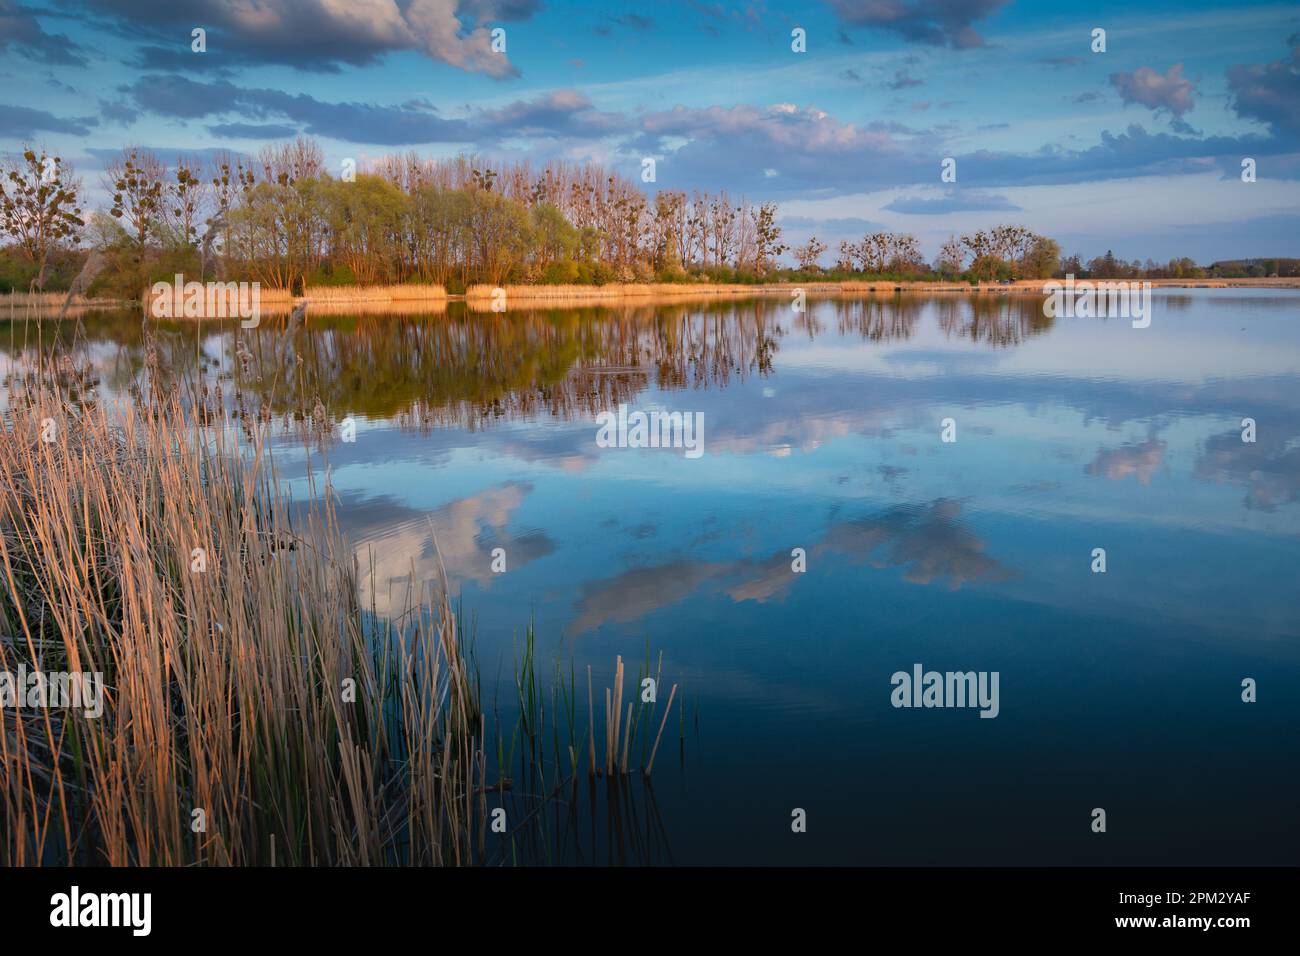 Reflexion von Wolken im Wasser eines ruhigen Sees und Bäume am Horizont, Stankow, Lubelskie, Polen Stockfoto